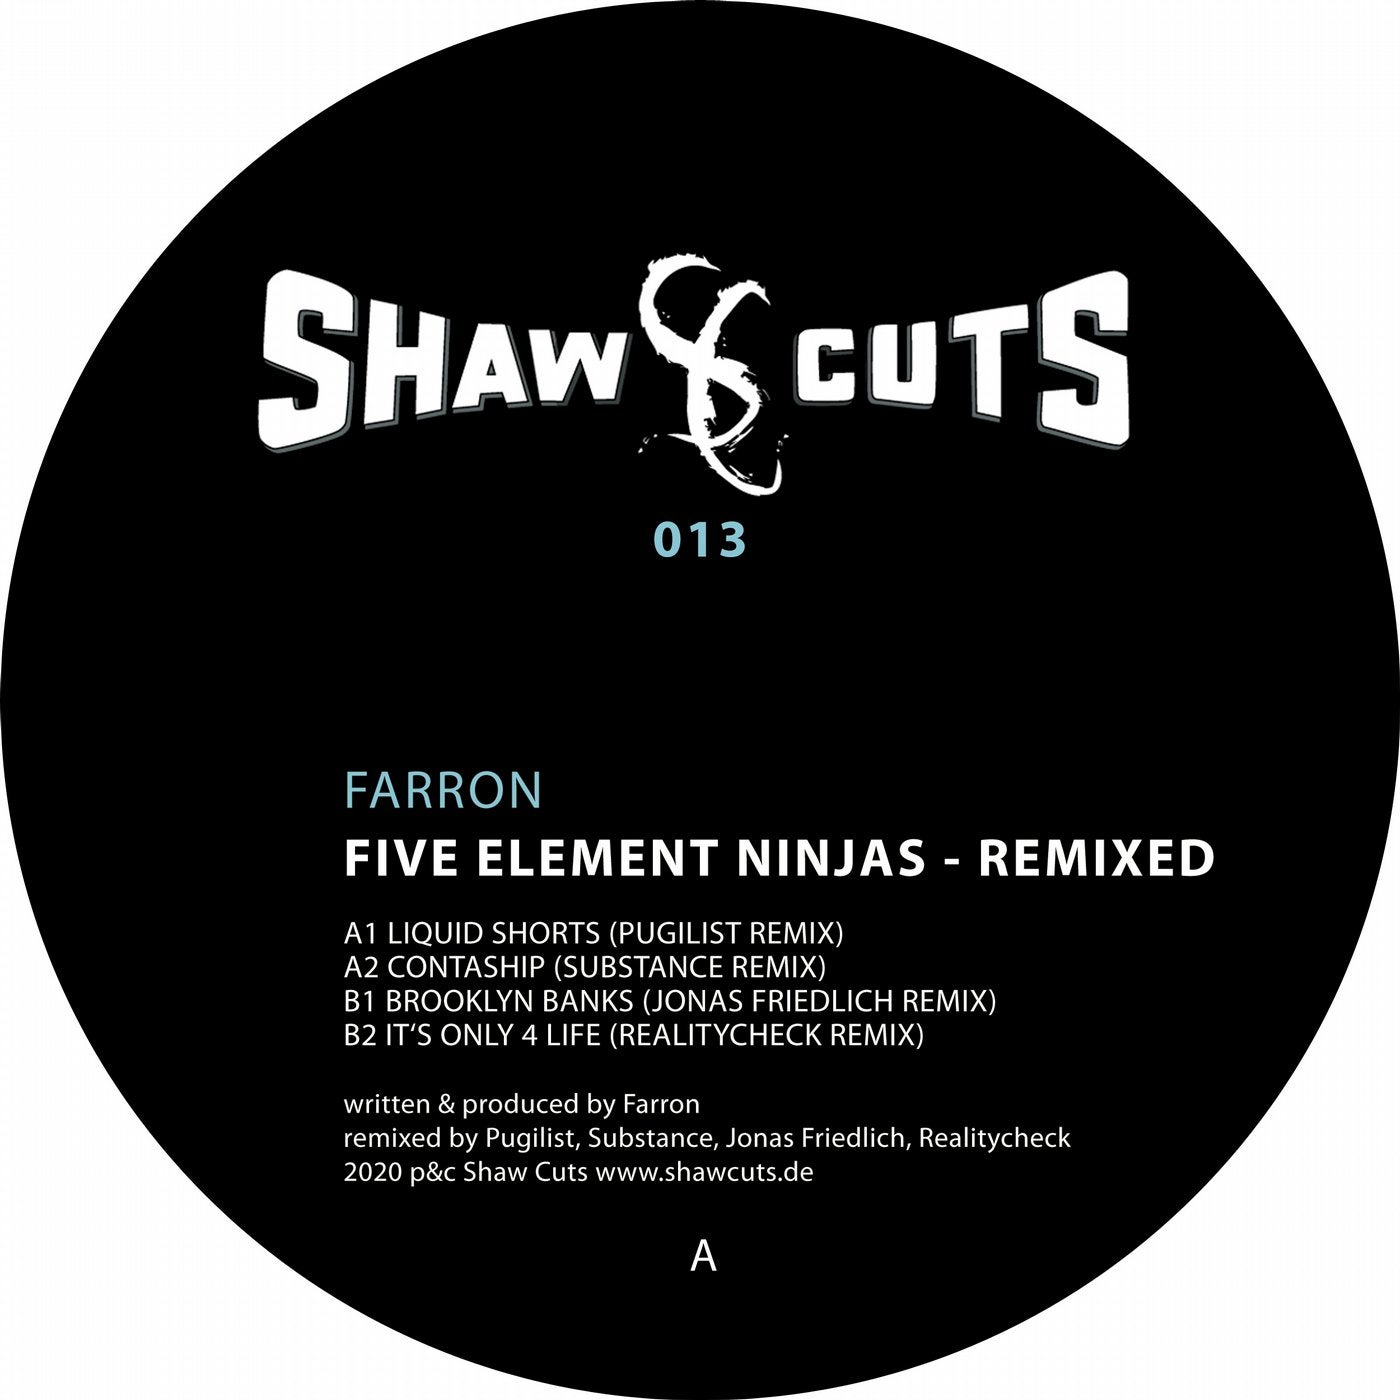 Five Element Ninjas - Remixed